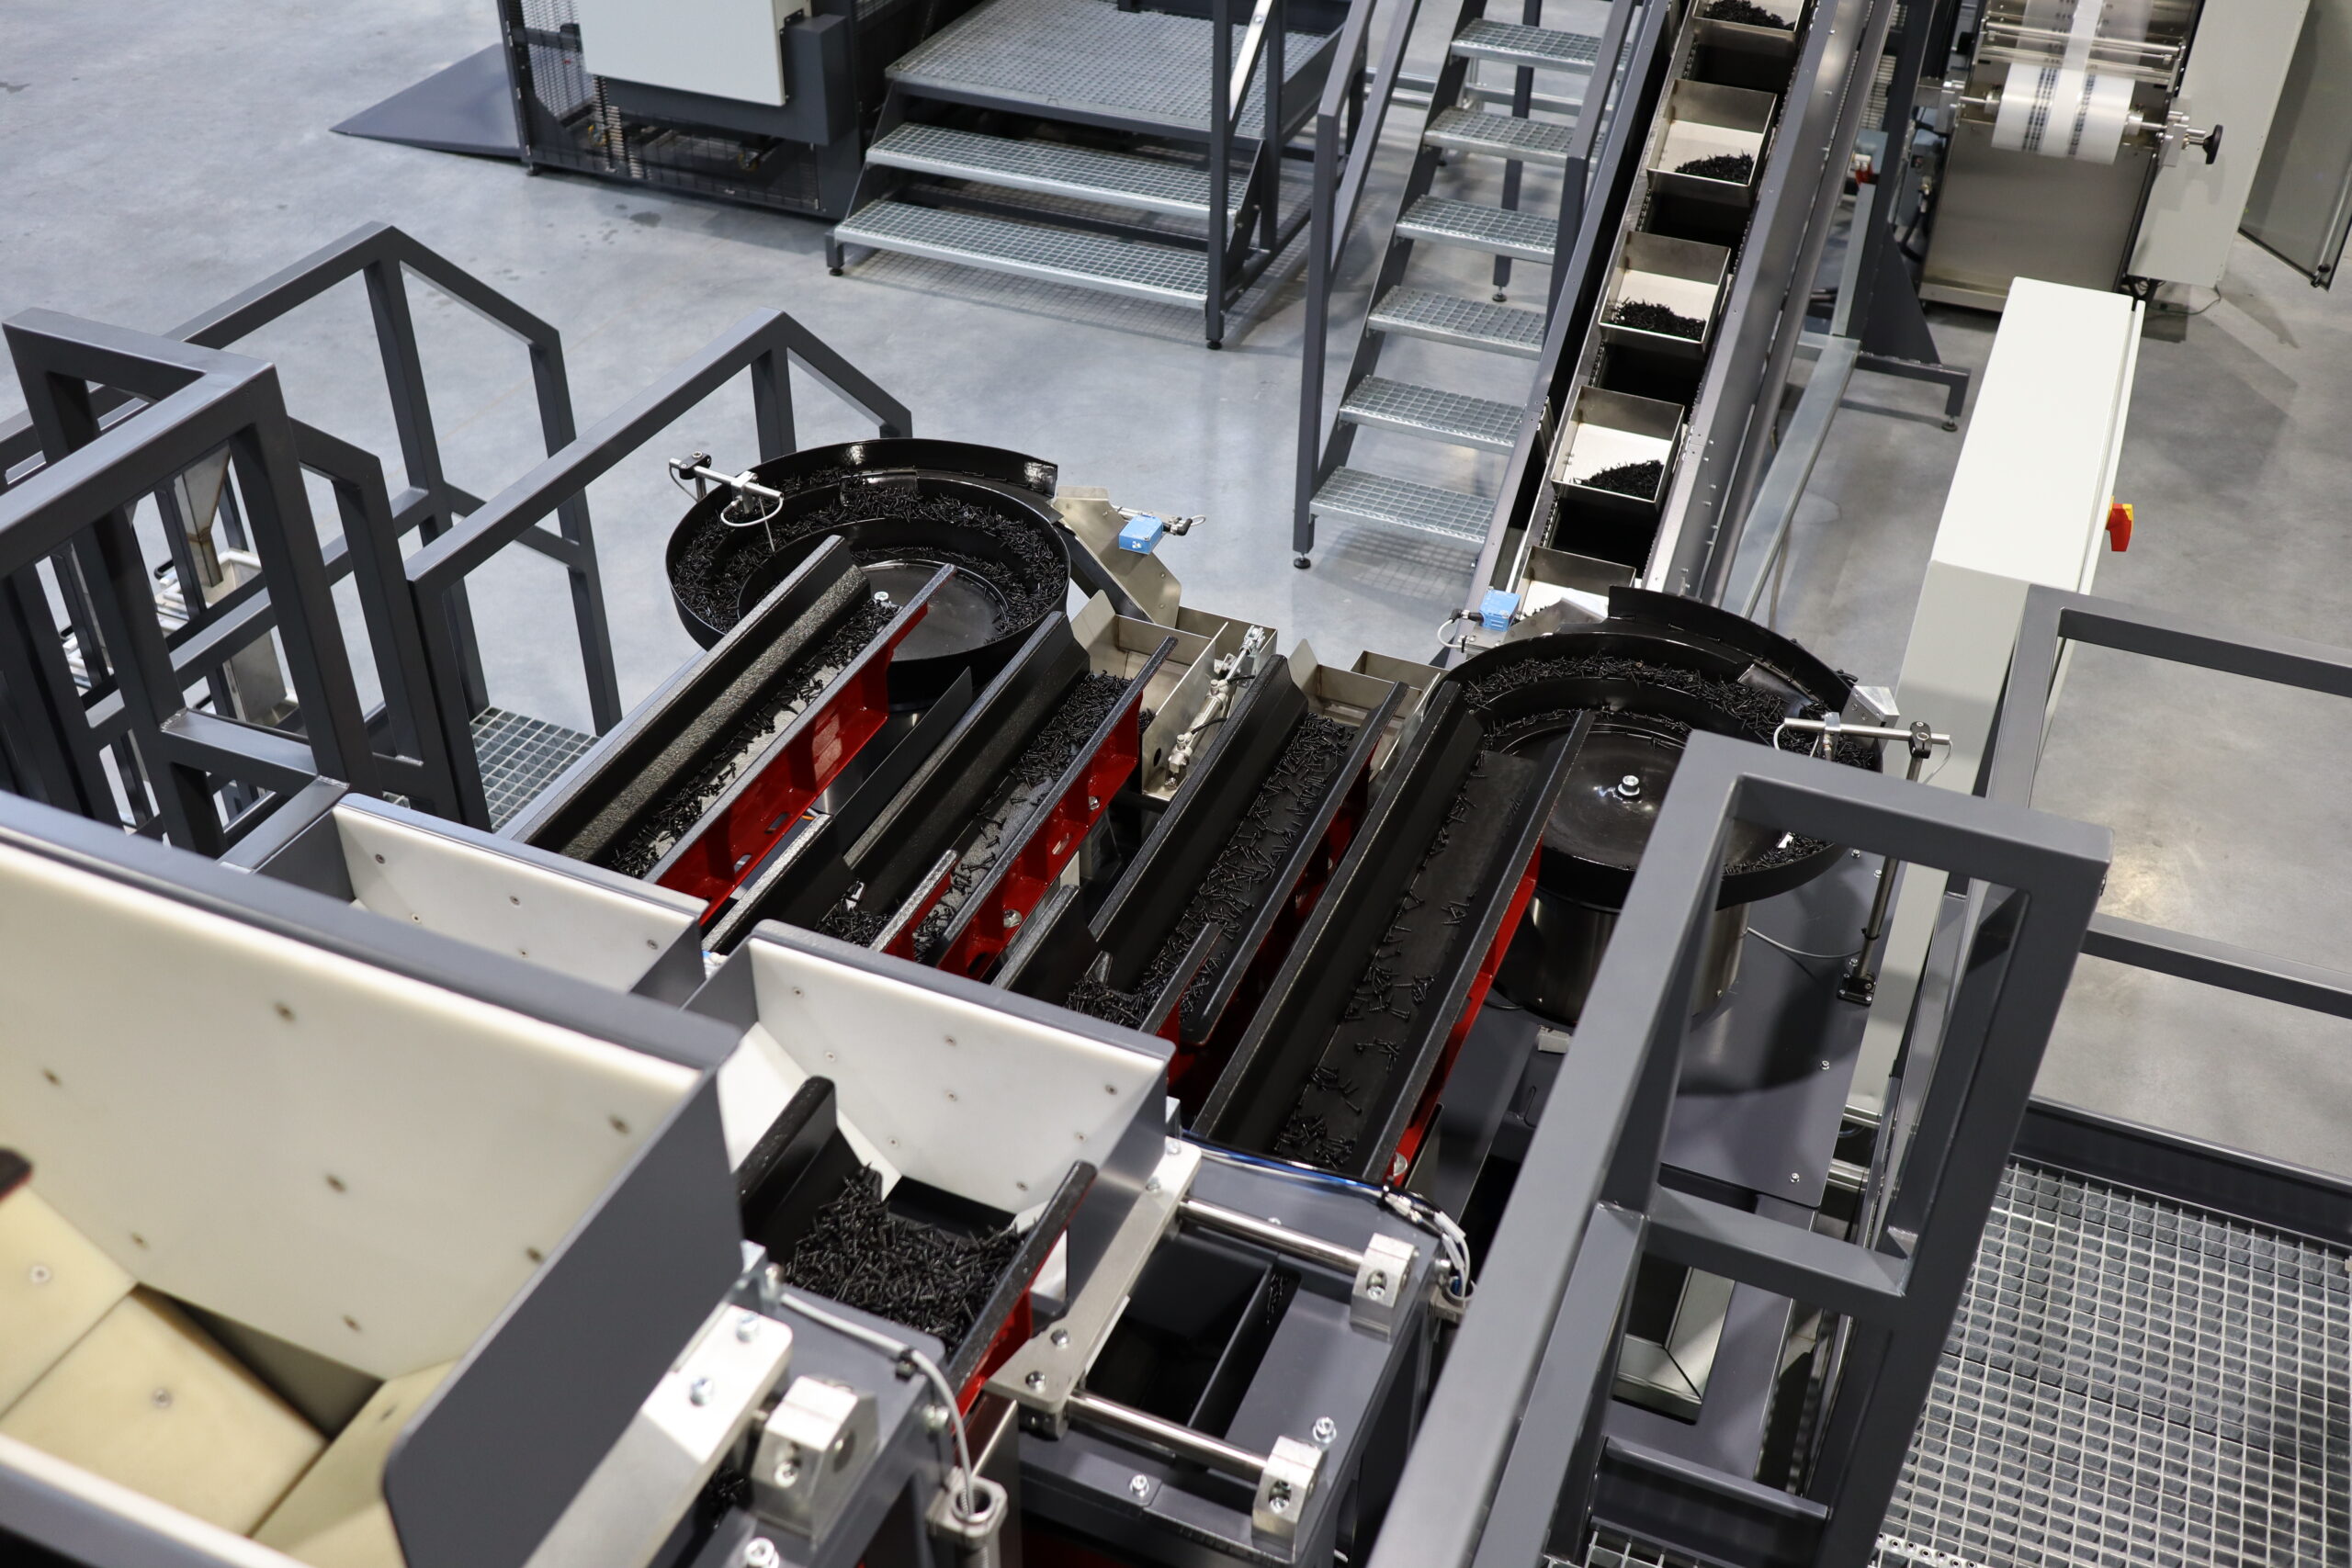 Modułowe maszyny do pakowania- sposób na usprawnienie procesu pakowania w produkcji masowej. Wykonane są ze stali nierdzewnej. Produkcja masowa bazuje na ciągłości pracy